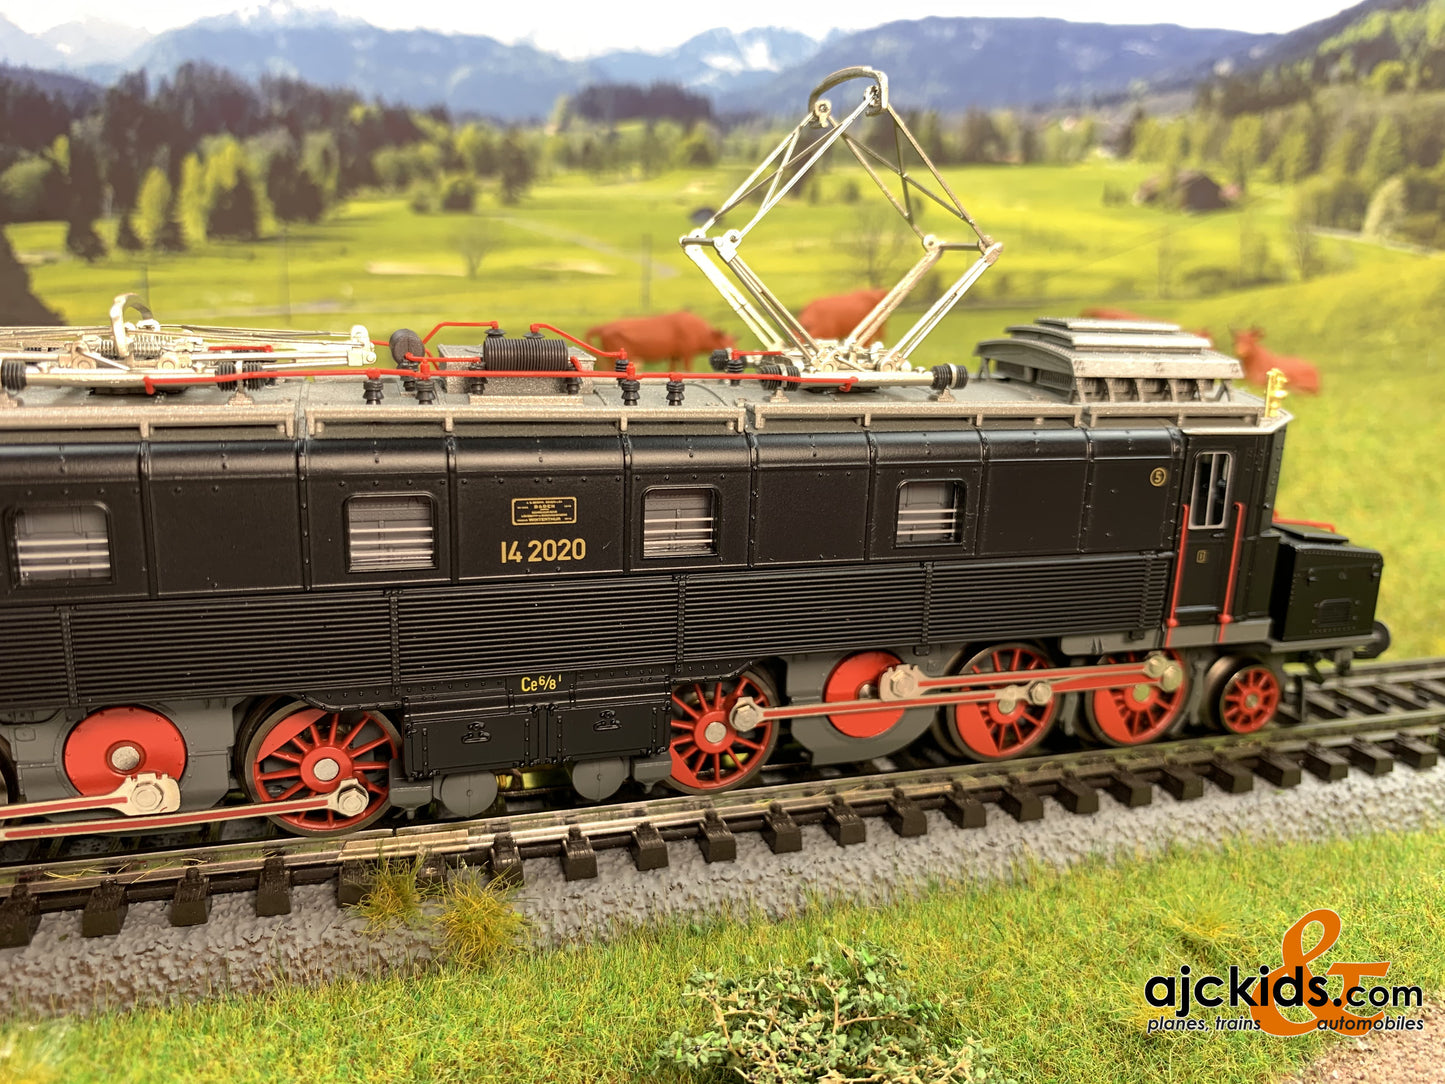 Marklin 39523 - Class Ce 6/8 I "Köfferli" Electric Locomotive - Toy Fair 2020